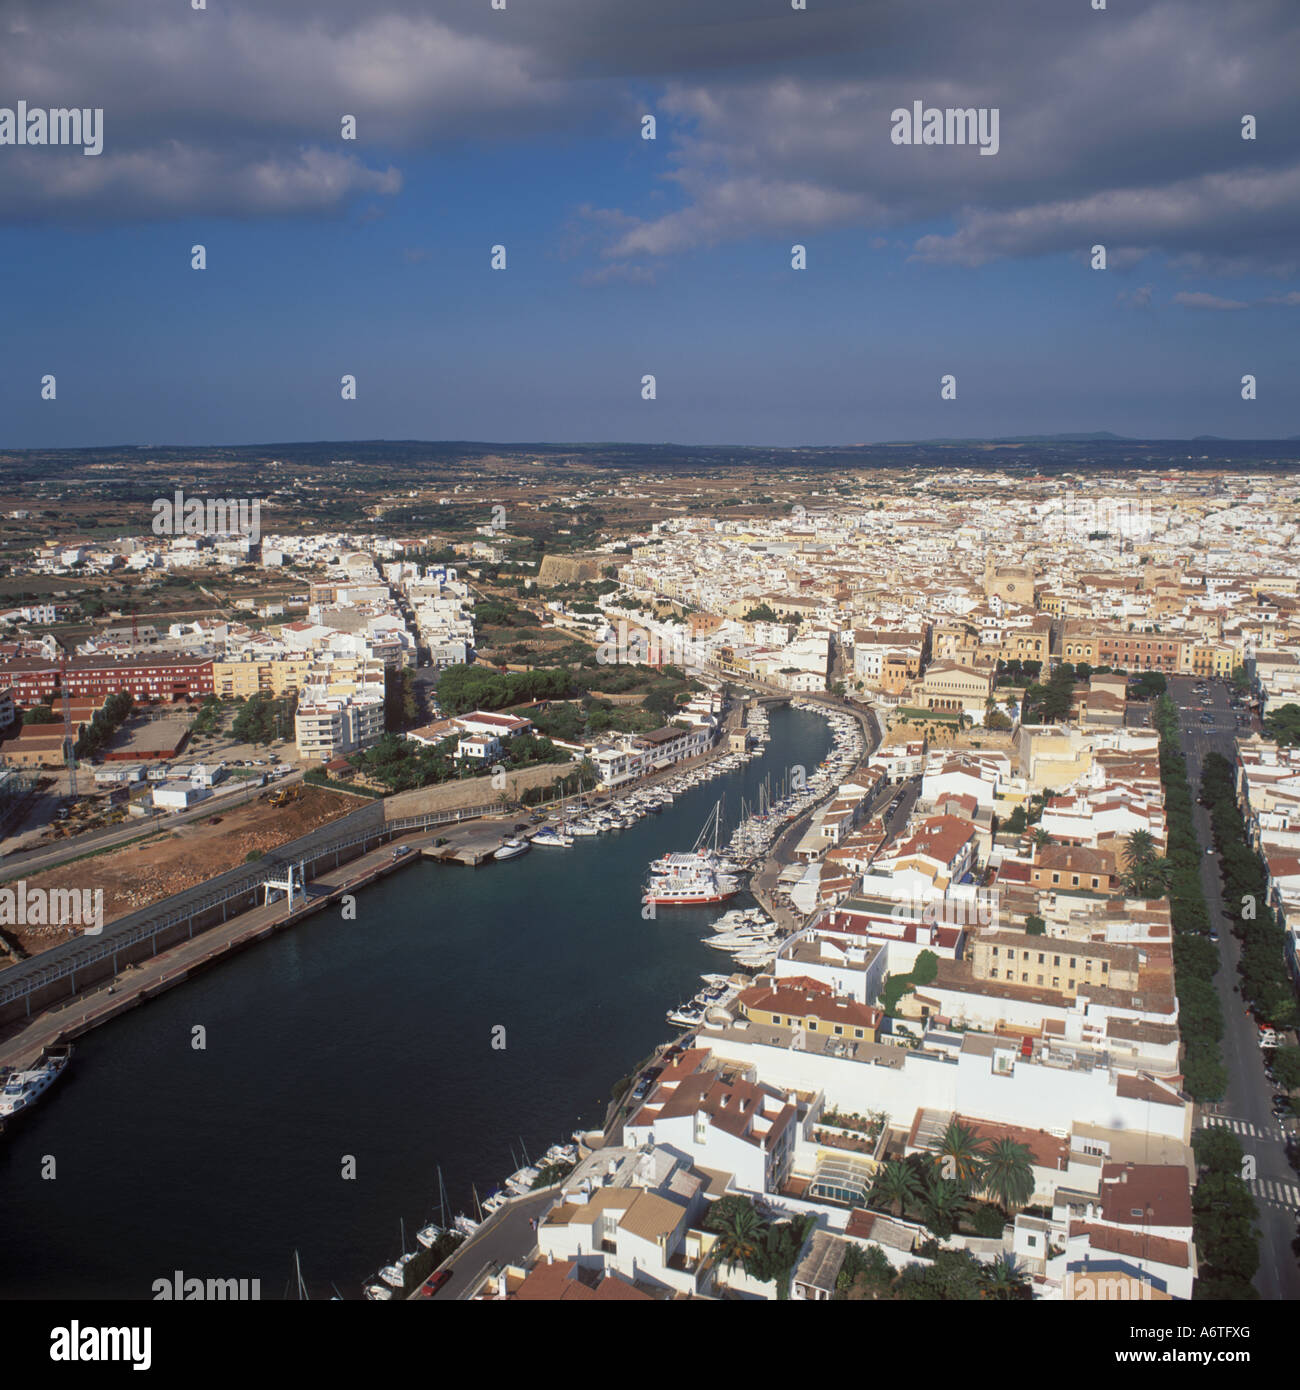 Vista aérea - mirando al norte a través del puerto / Puerto de La Ciutadella hacia la ciudad de Ciudadela / Ciutadella, Menorca. Foto de stock